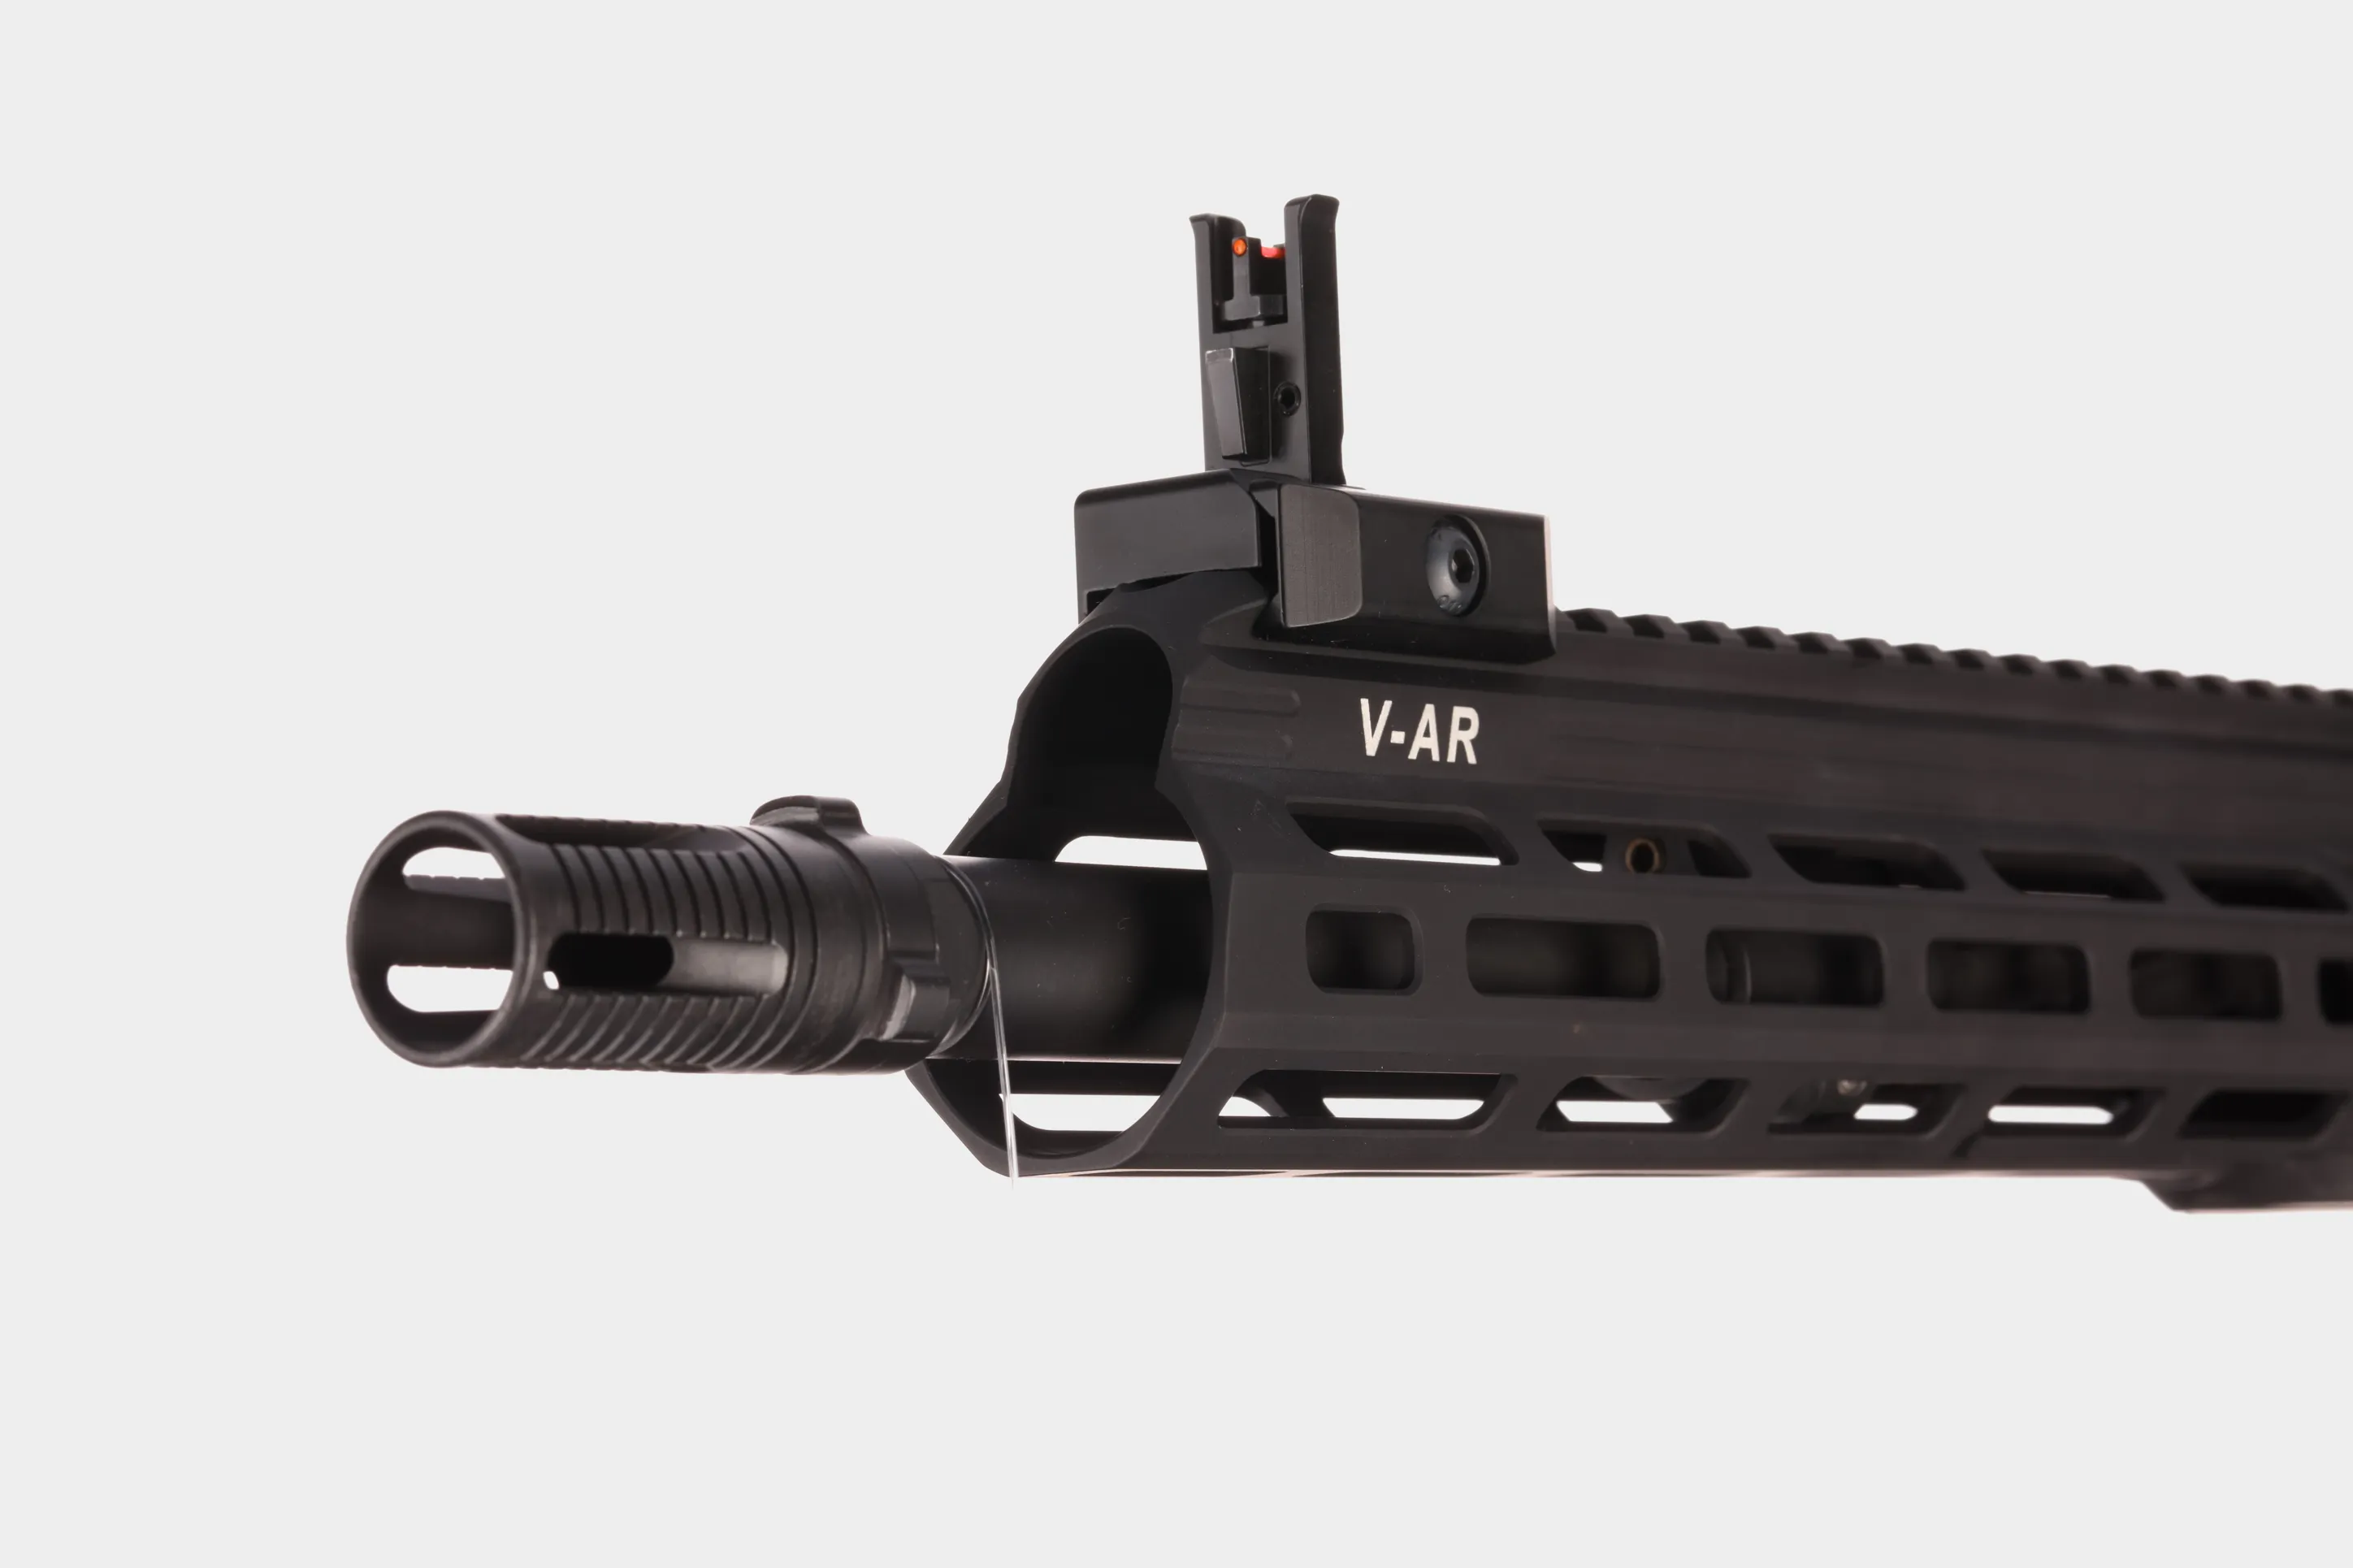 Obrázek 1 v galerii zbraně V-AR 300 AAC Blackout